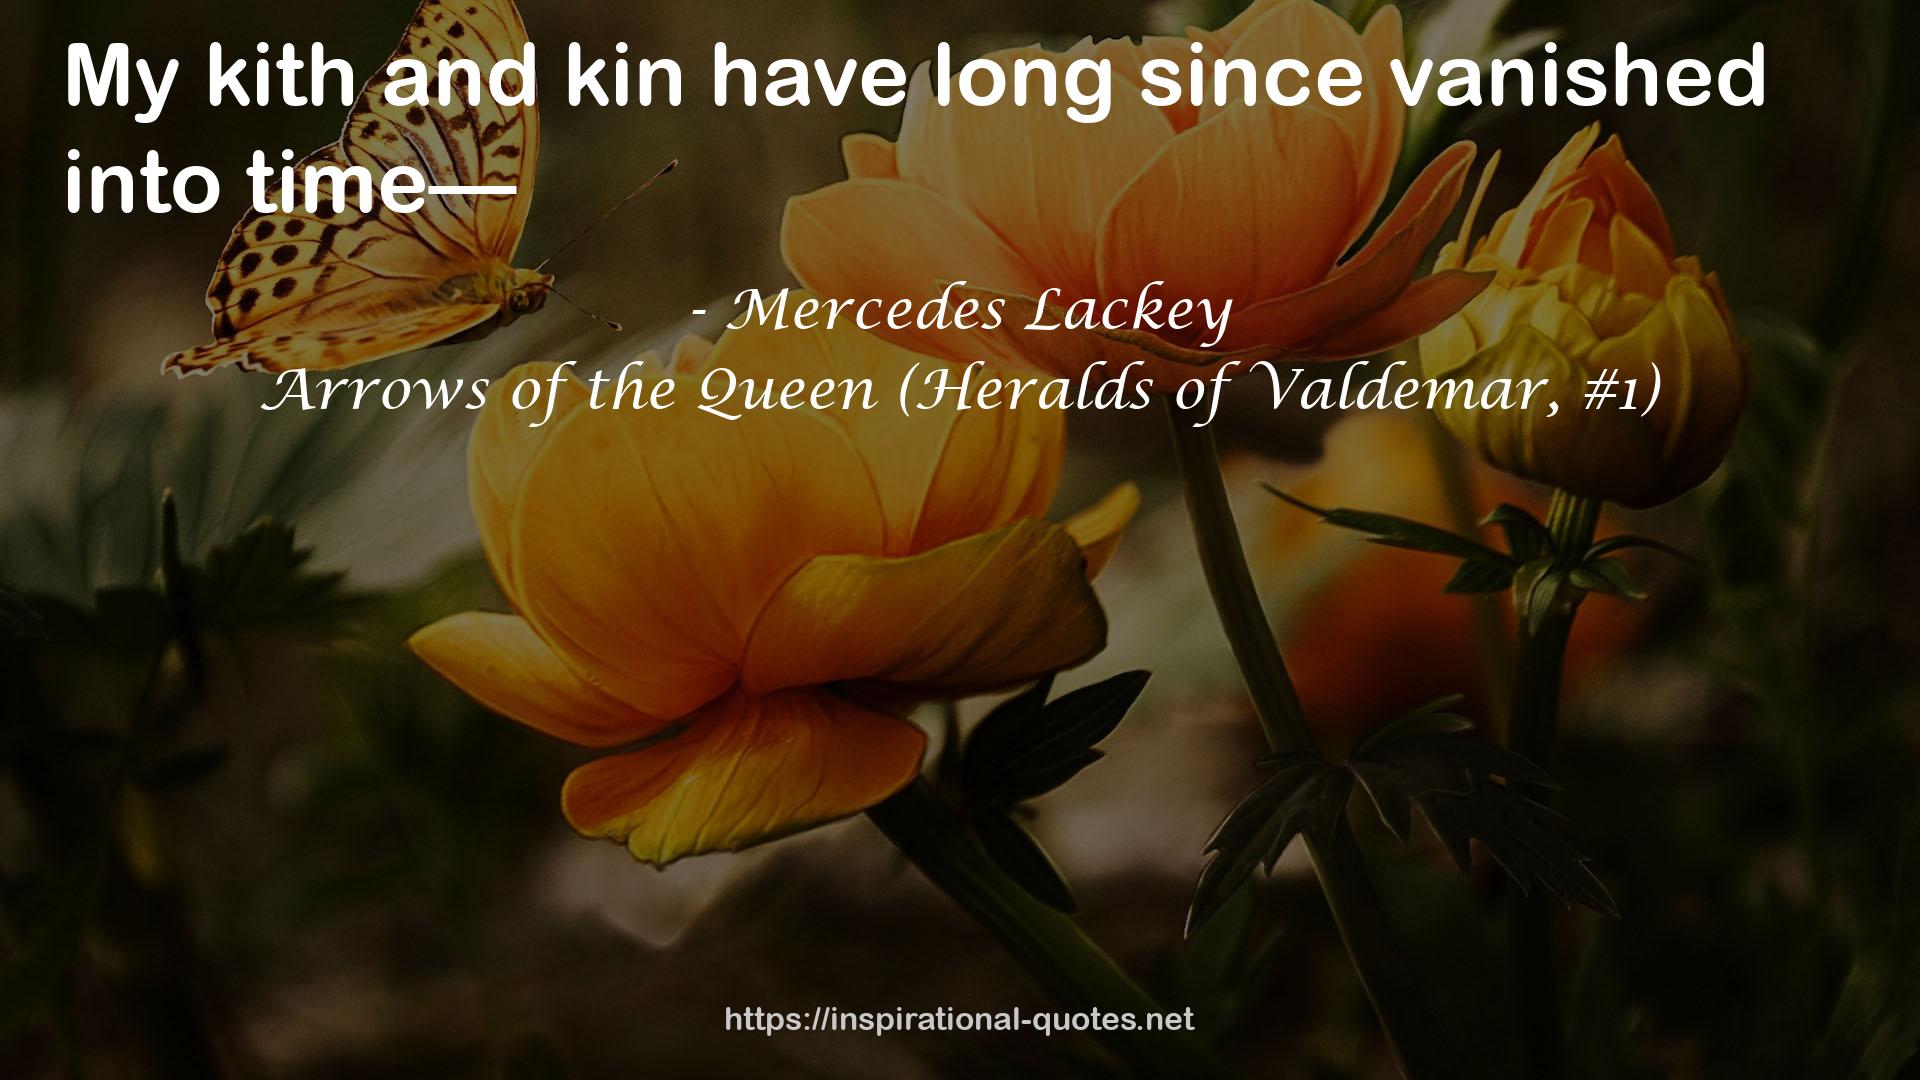 Arrows of the Queen (Heralds of Valdemar, #1) QUOTES